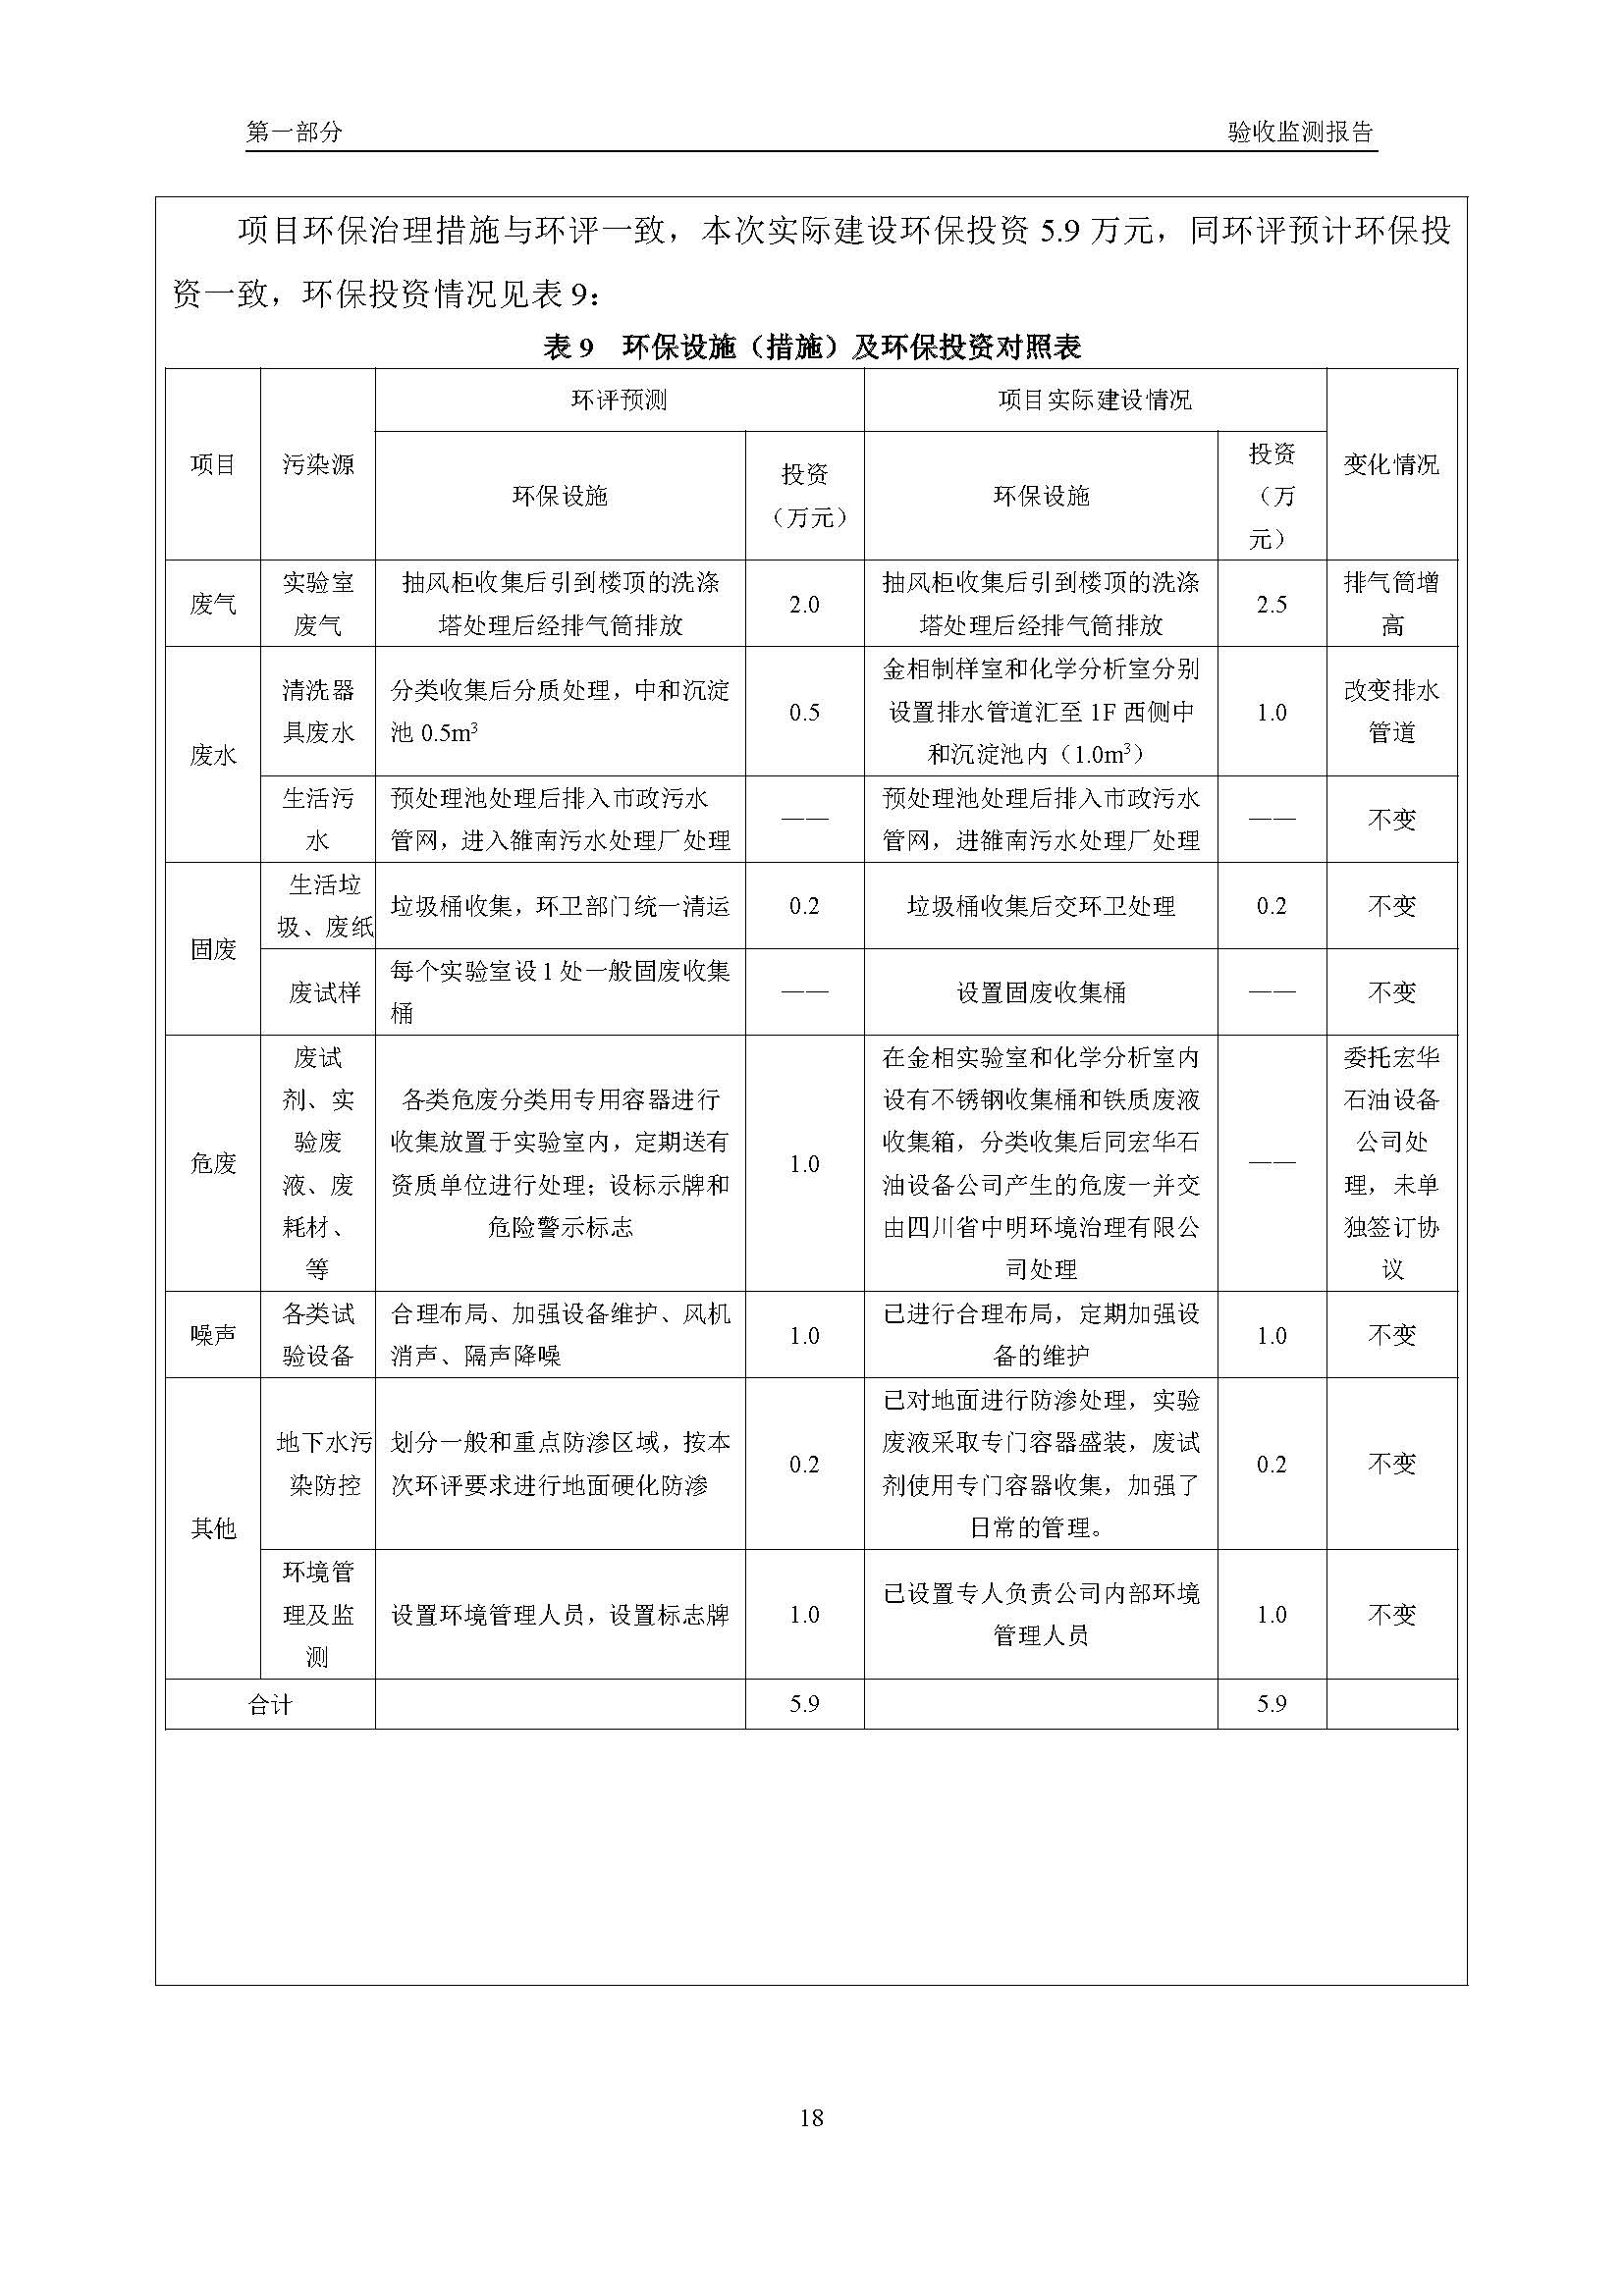 汉正检测环评验收报告 2018.05.31_页面_20.jpg